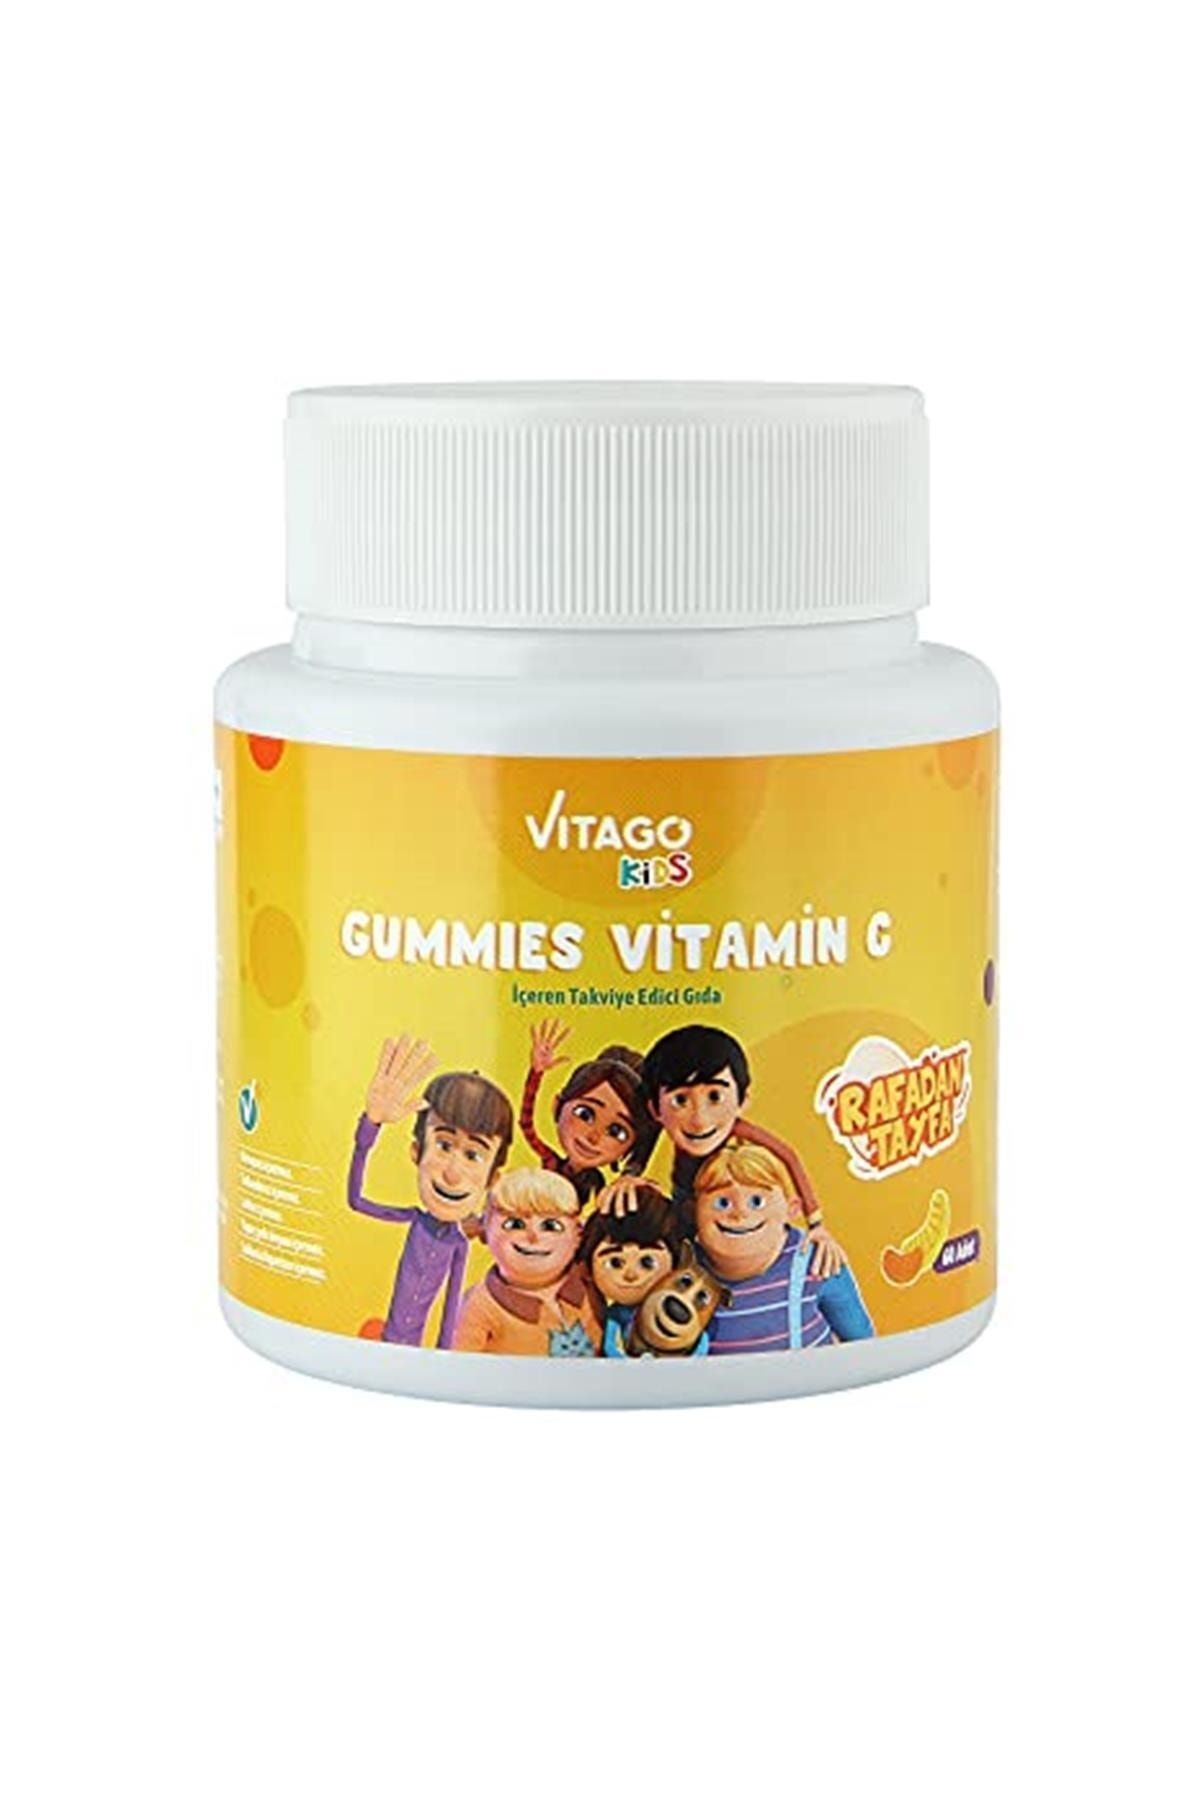 Vitago Kids Gummies C Vitamini Içeren 60 Adet Çiğnenebilir Gummy Jel